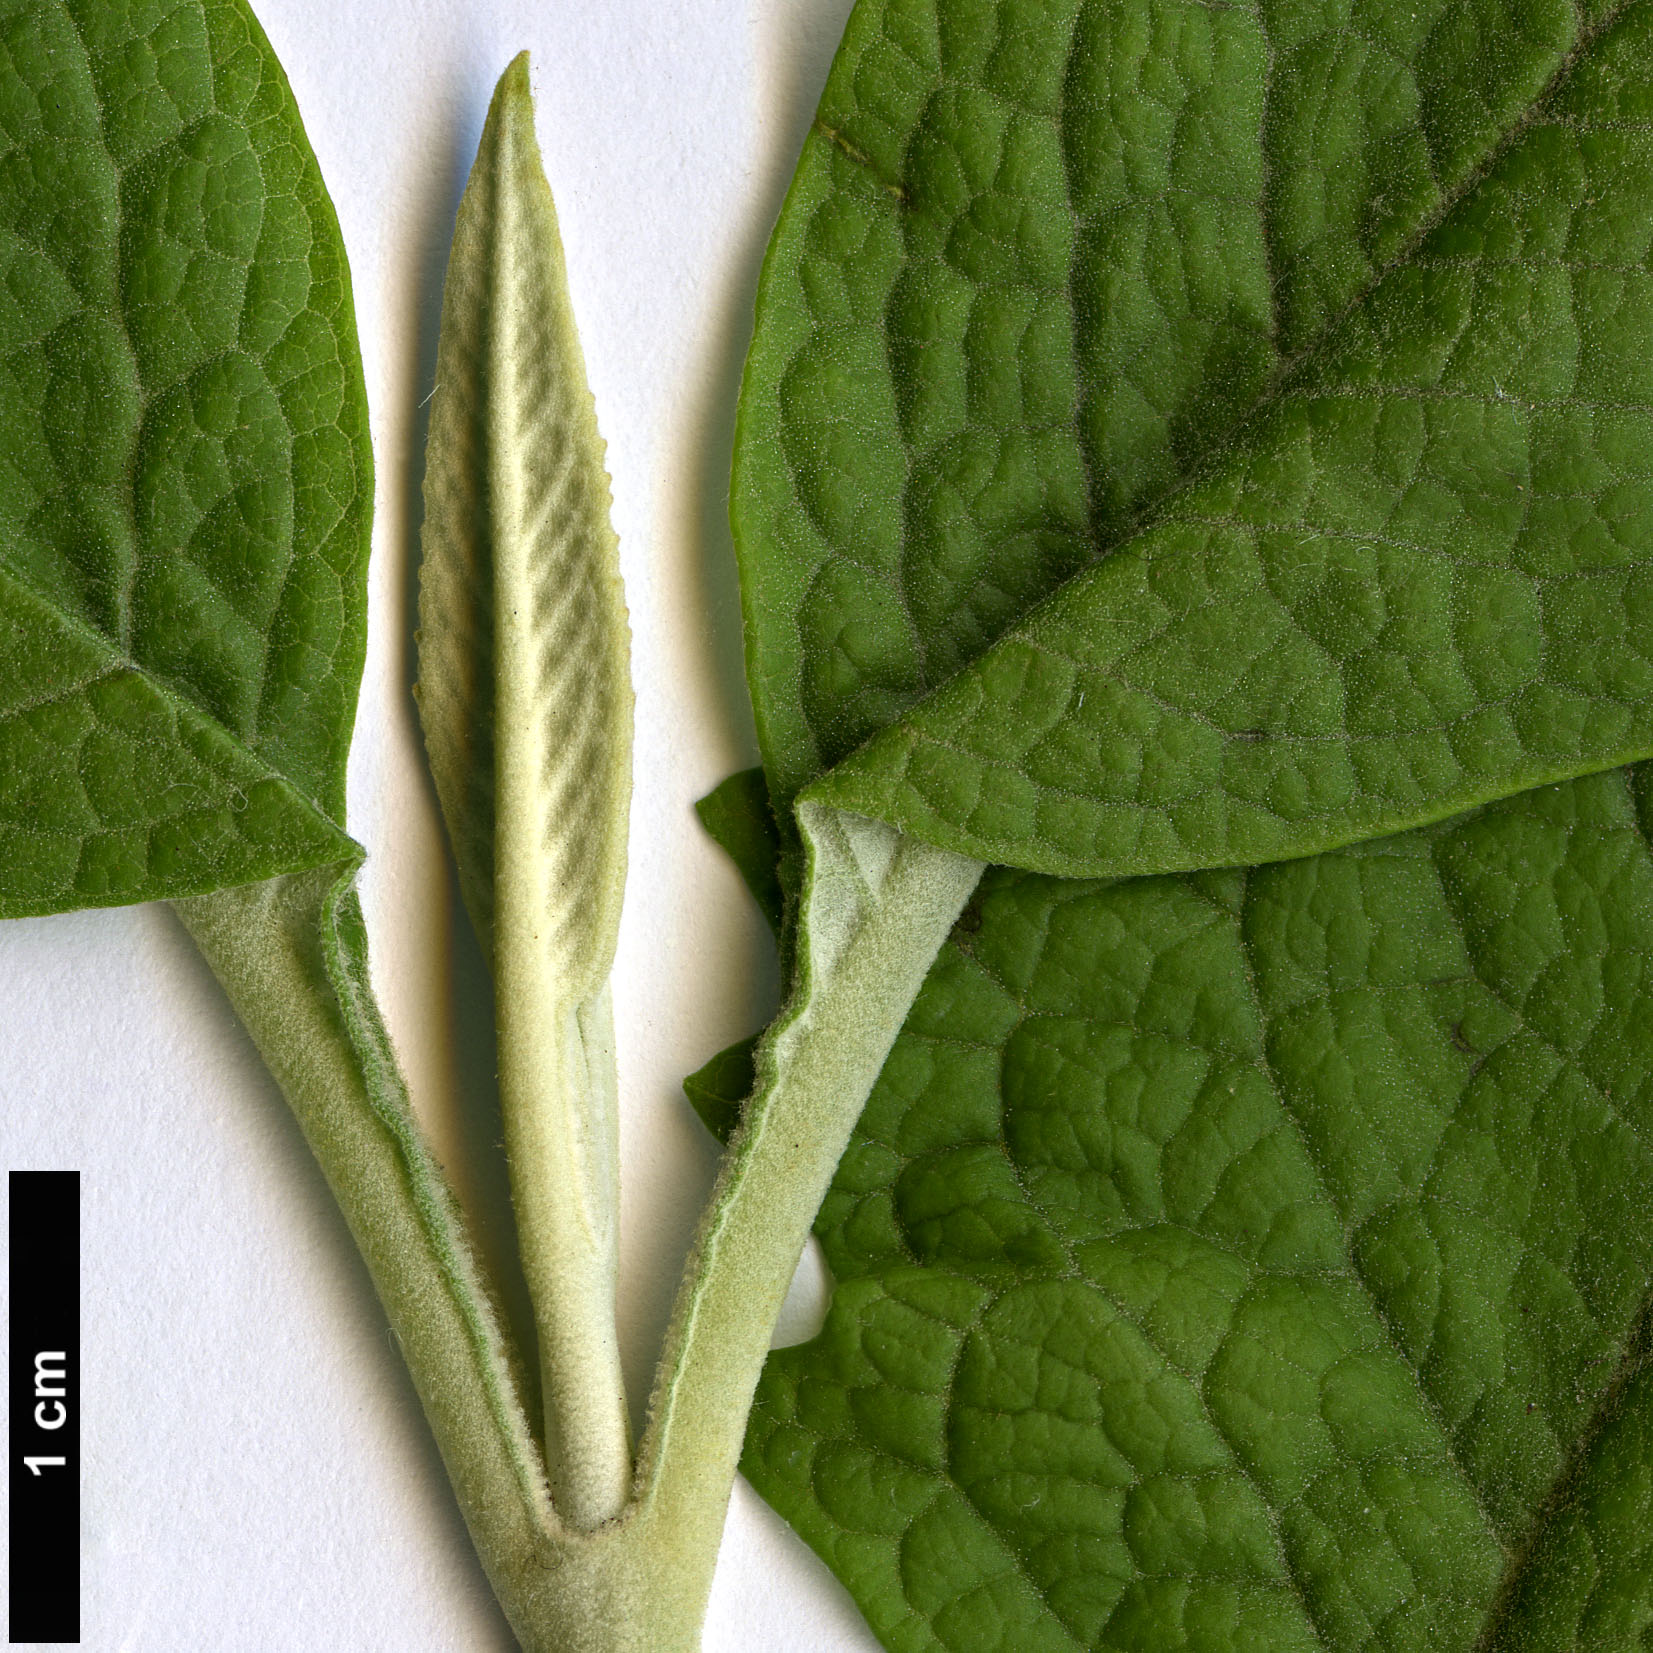 High resolution image: Family: Scrophulariaceae - Genus: Buddleja - Taxon: tucumanensis